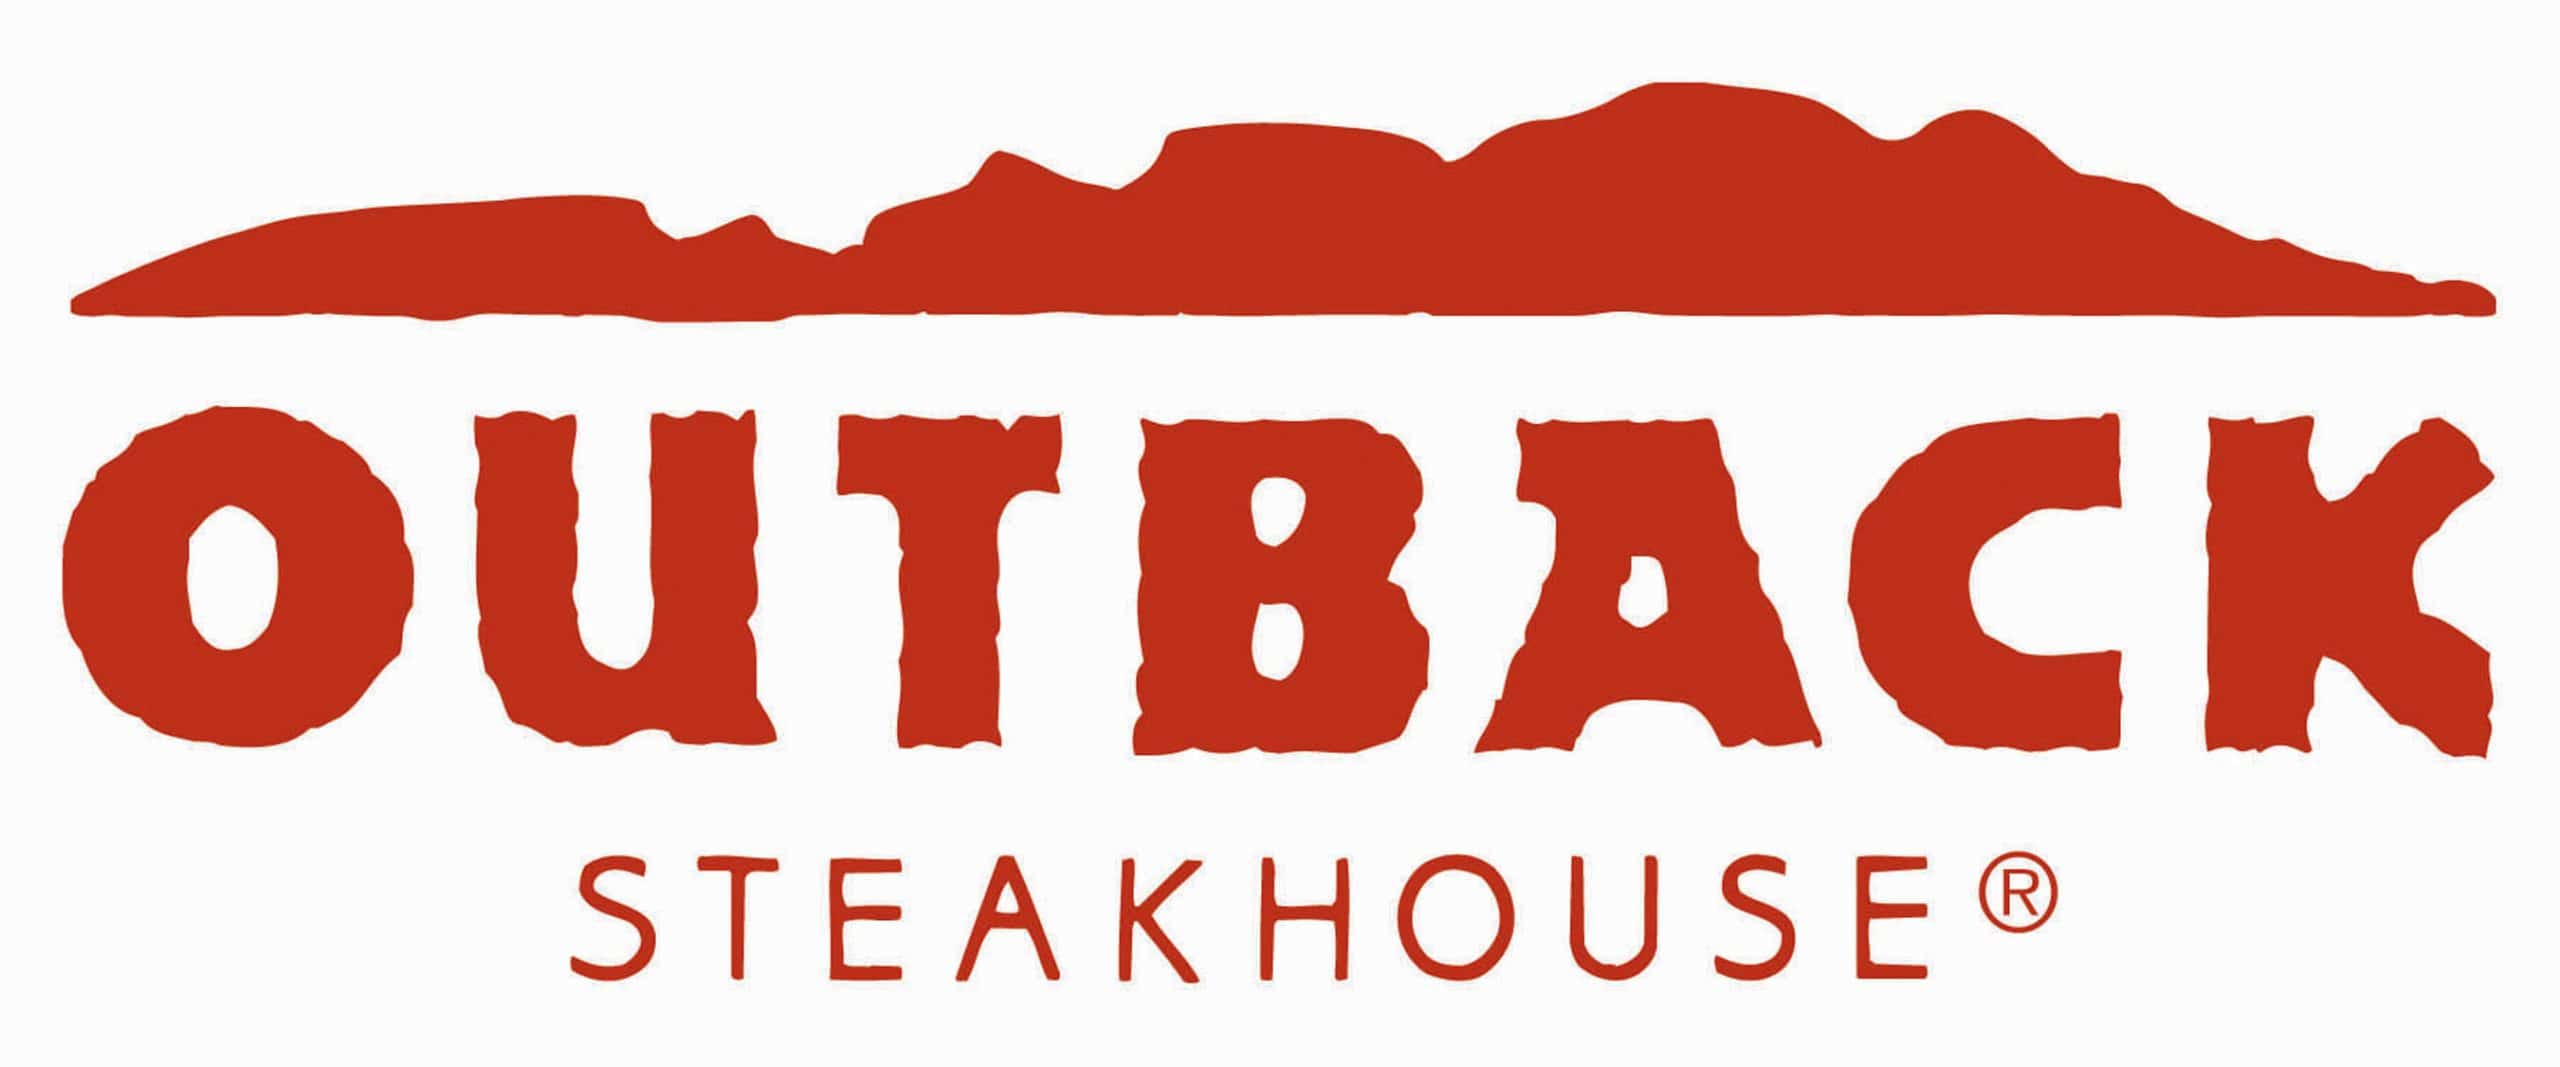 Logotipo de Outback Steakhouse